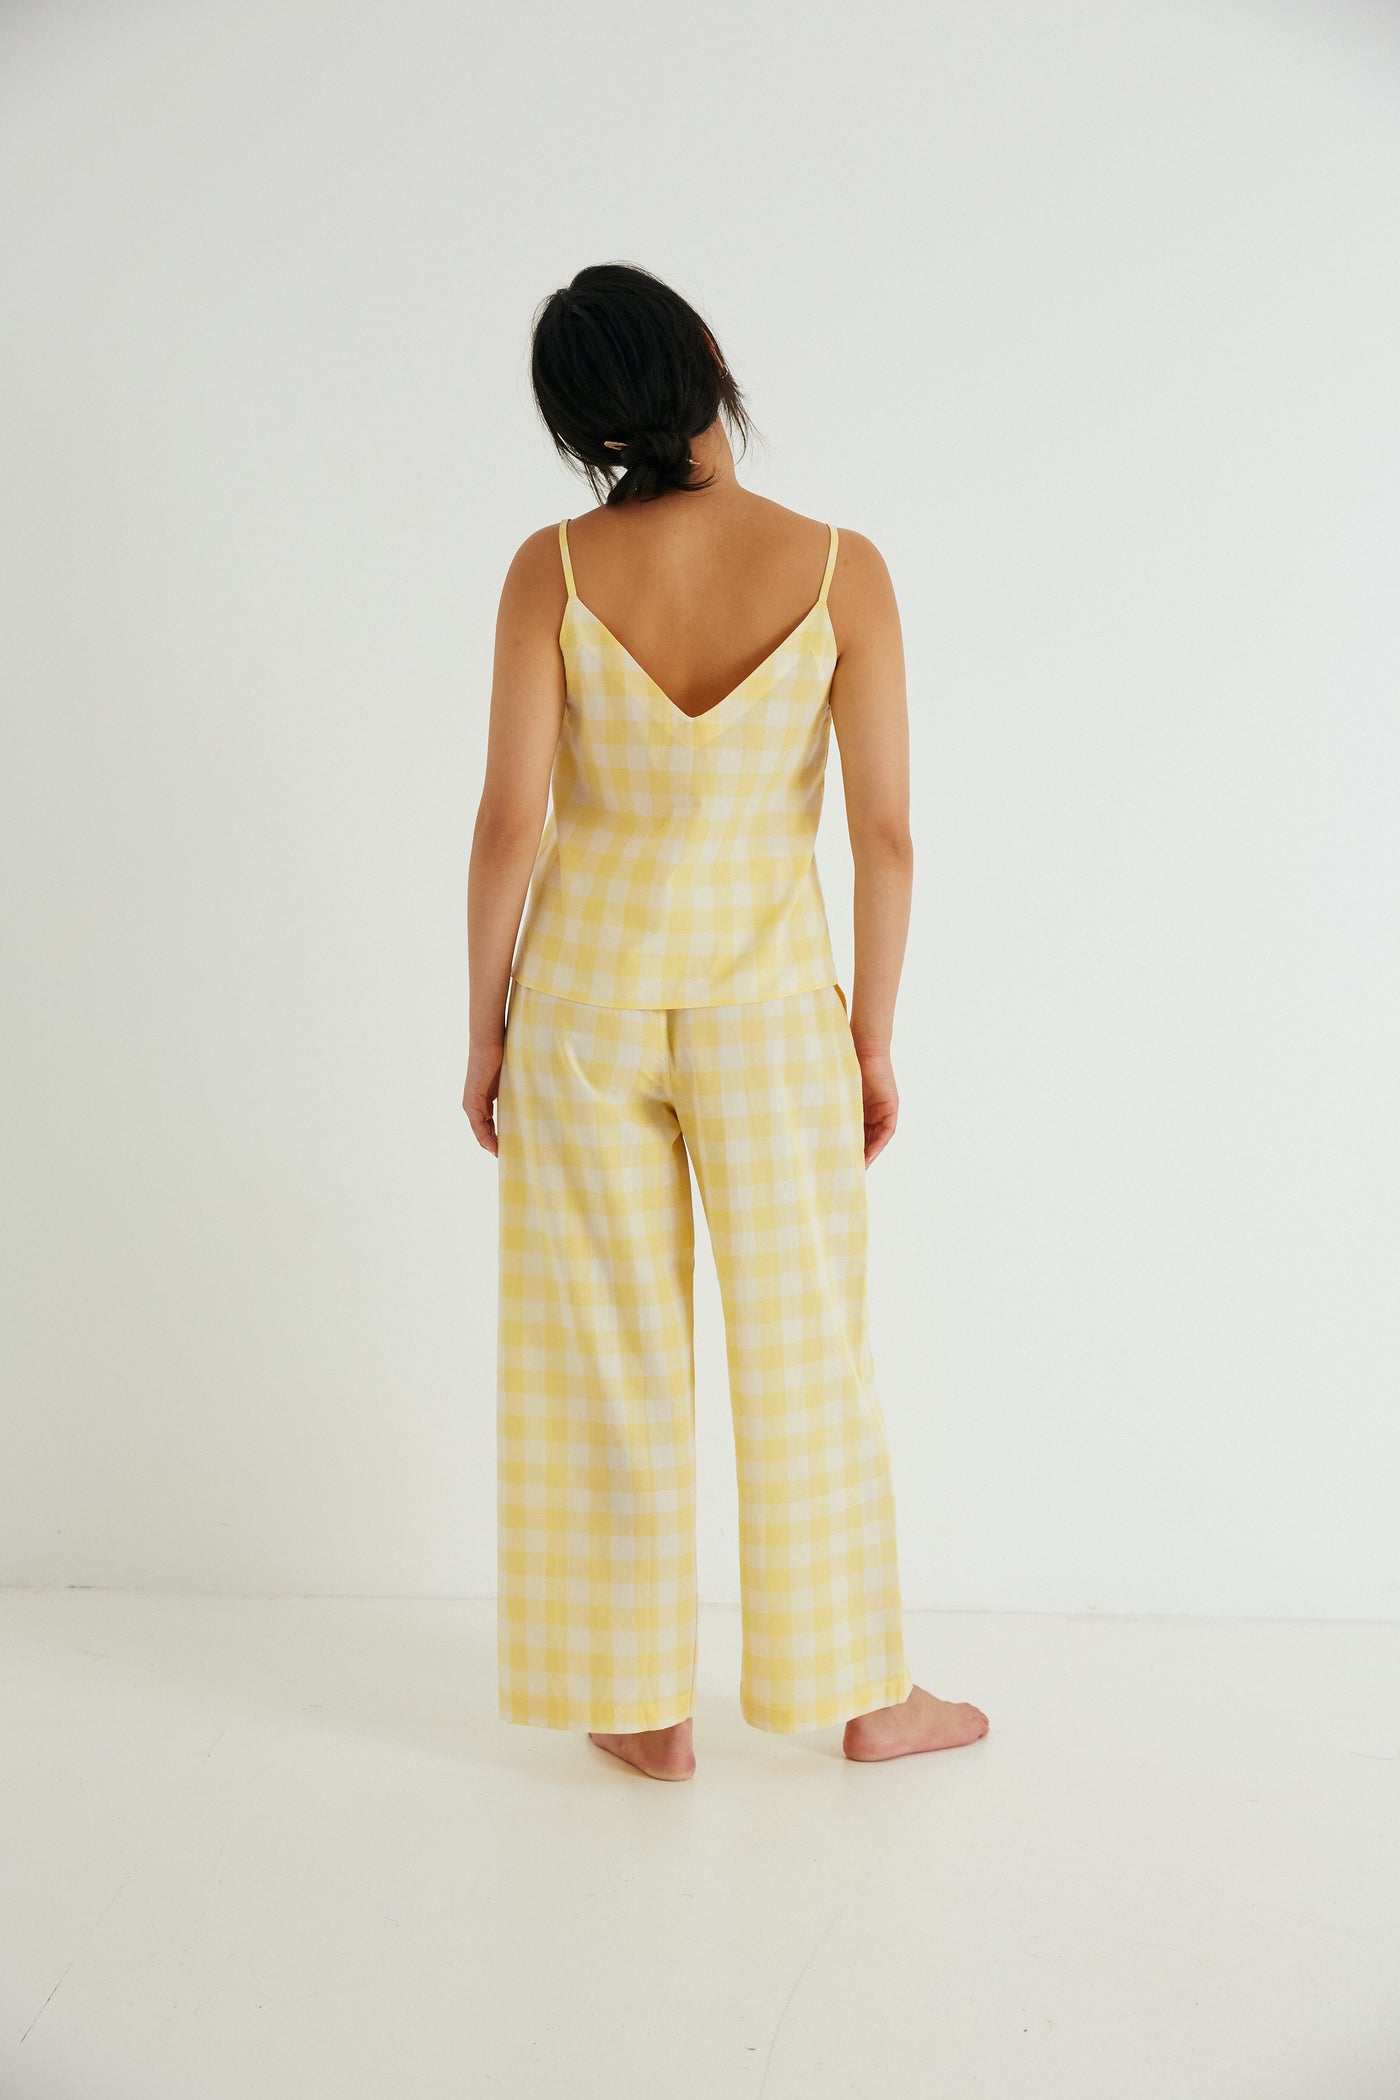 Organic cotton Paloma Set by General Sleep. Sustainably made pyjamas.